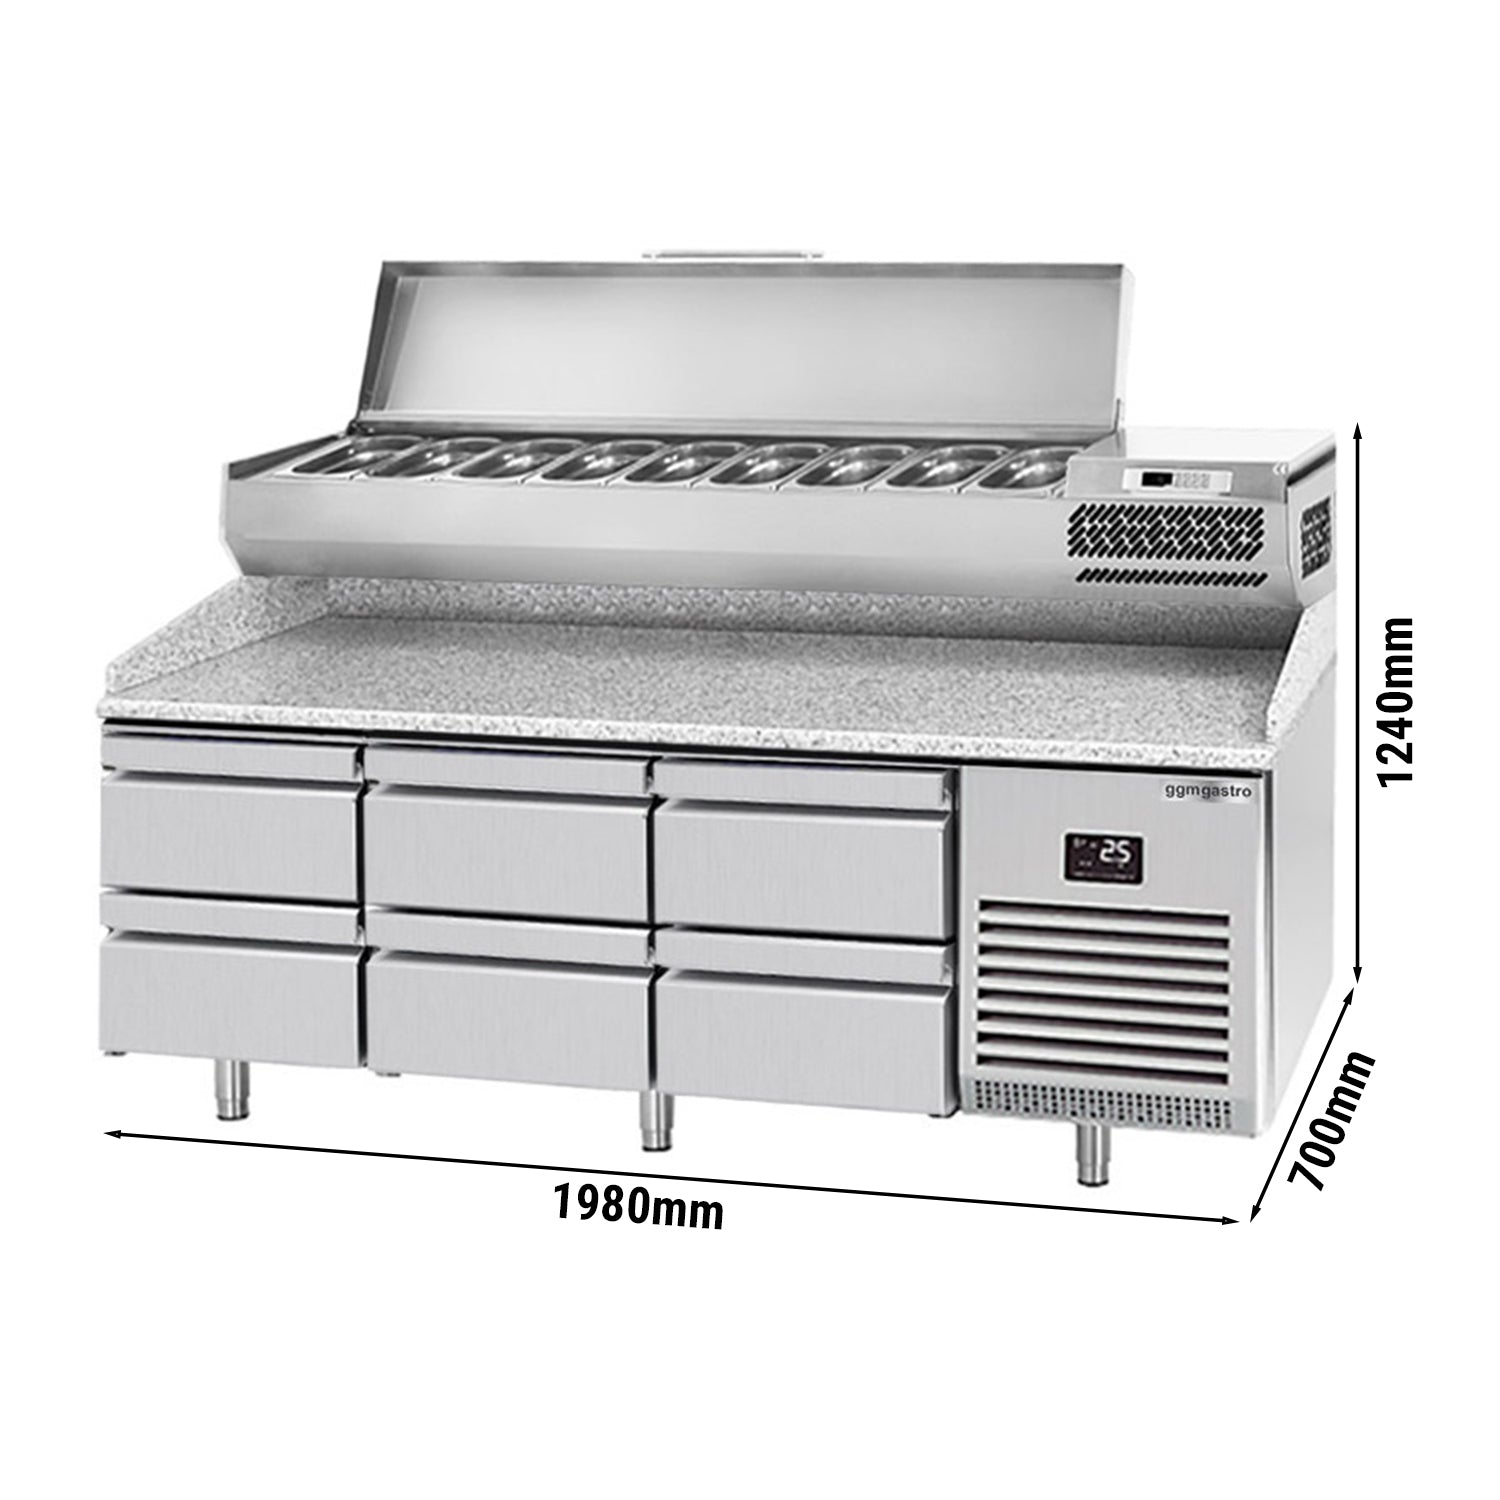 Охладителна маса за пица (GN) - с 6 чекмеджета 1/2 (GN 1/1) и охлаждаща горна витрина за 9x GN 1/4 контейнера